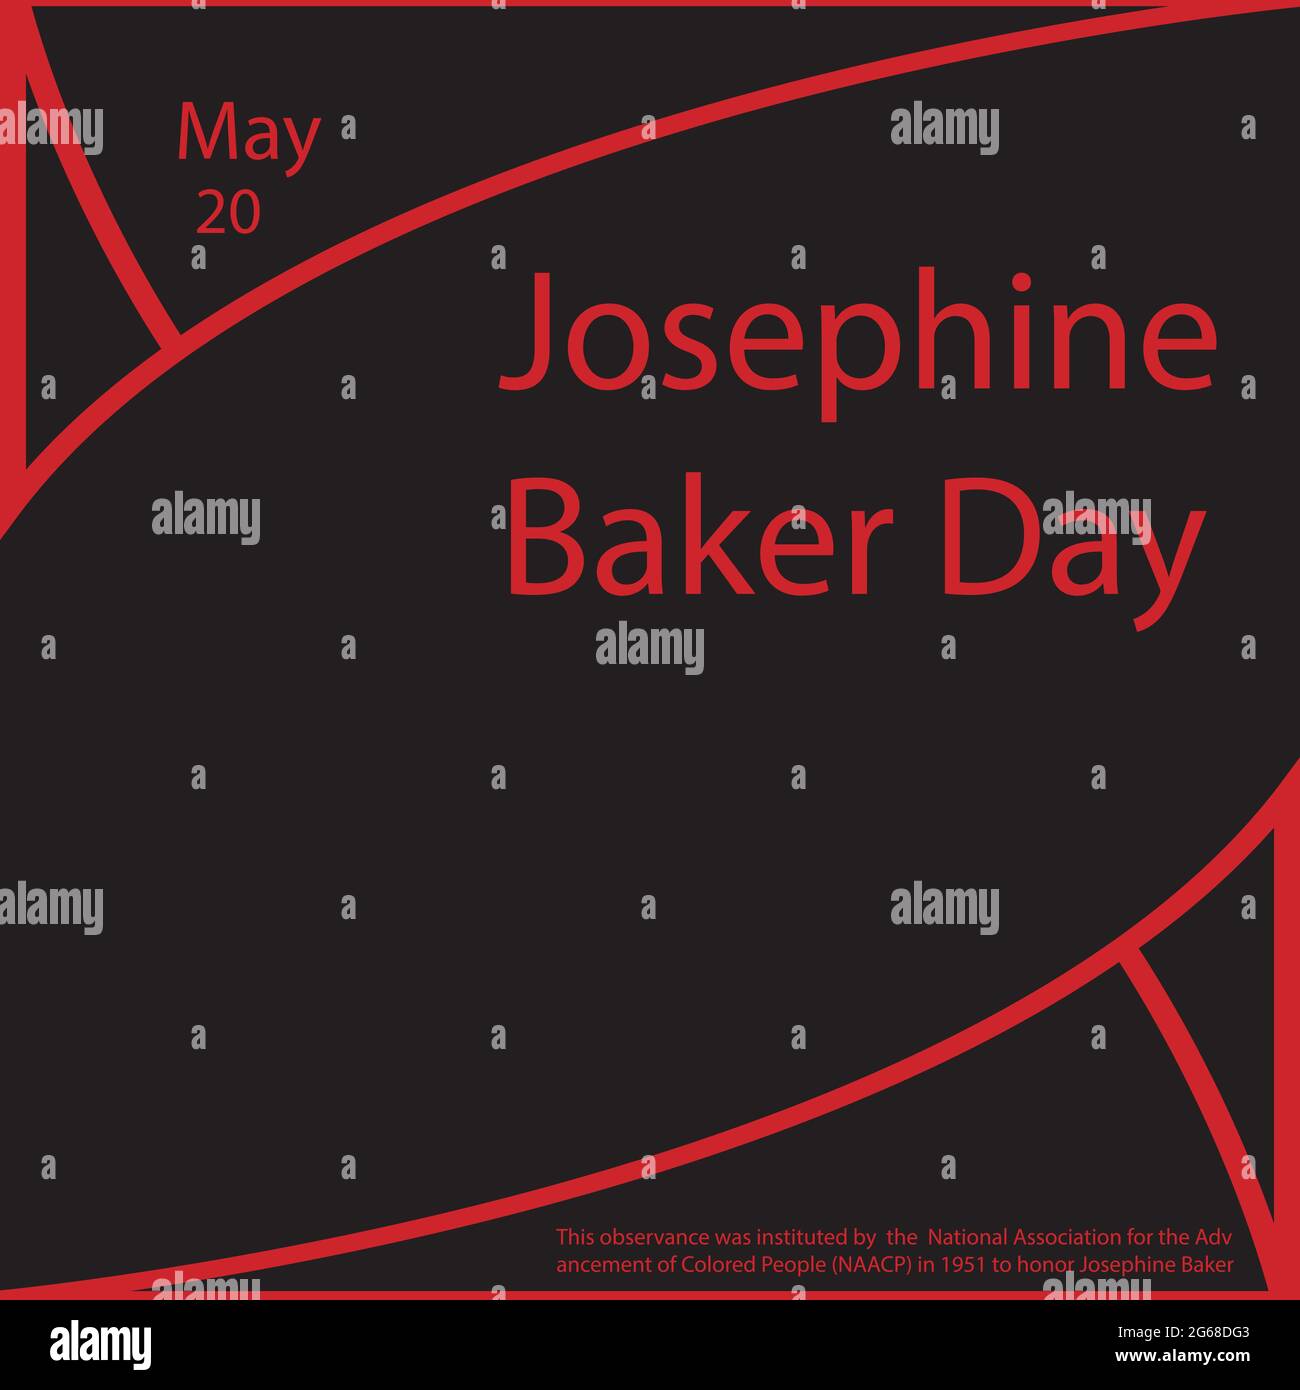 Il 20 maggio è Josephine Baker Day. Questa osservanza è stata istituita dall'Associazione Nazionale per la promozione delle persone colorate (NAACP) nel 1951 a hon Illustrazione Vettoriale